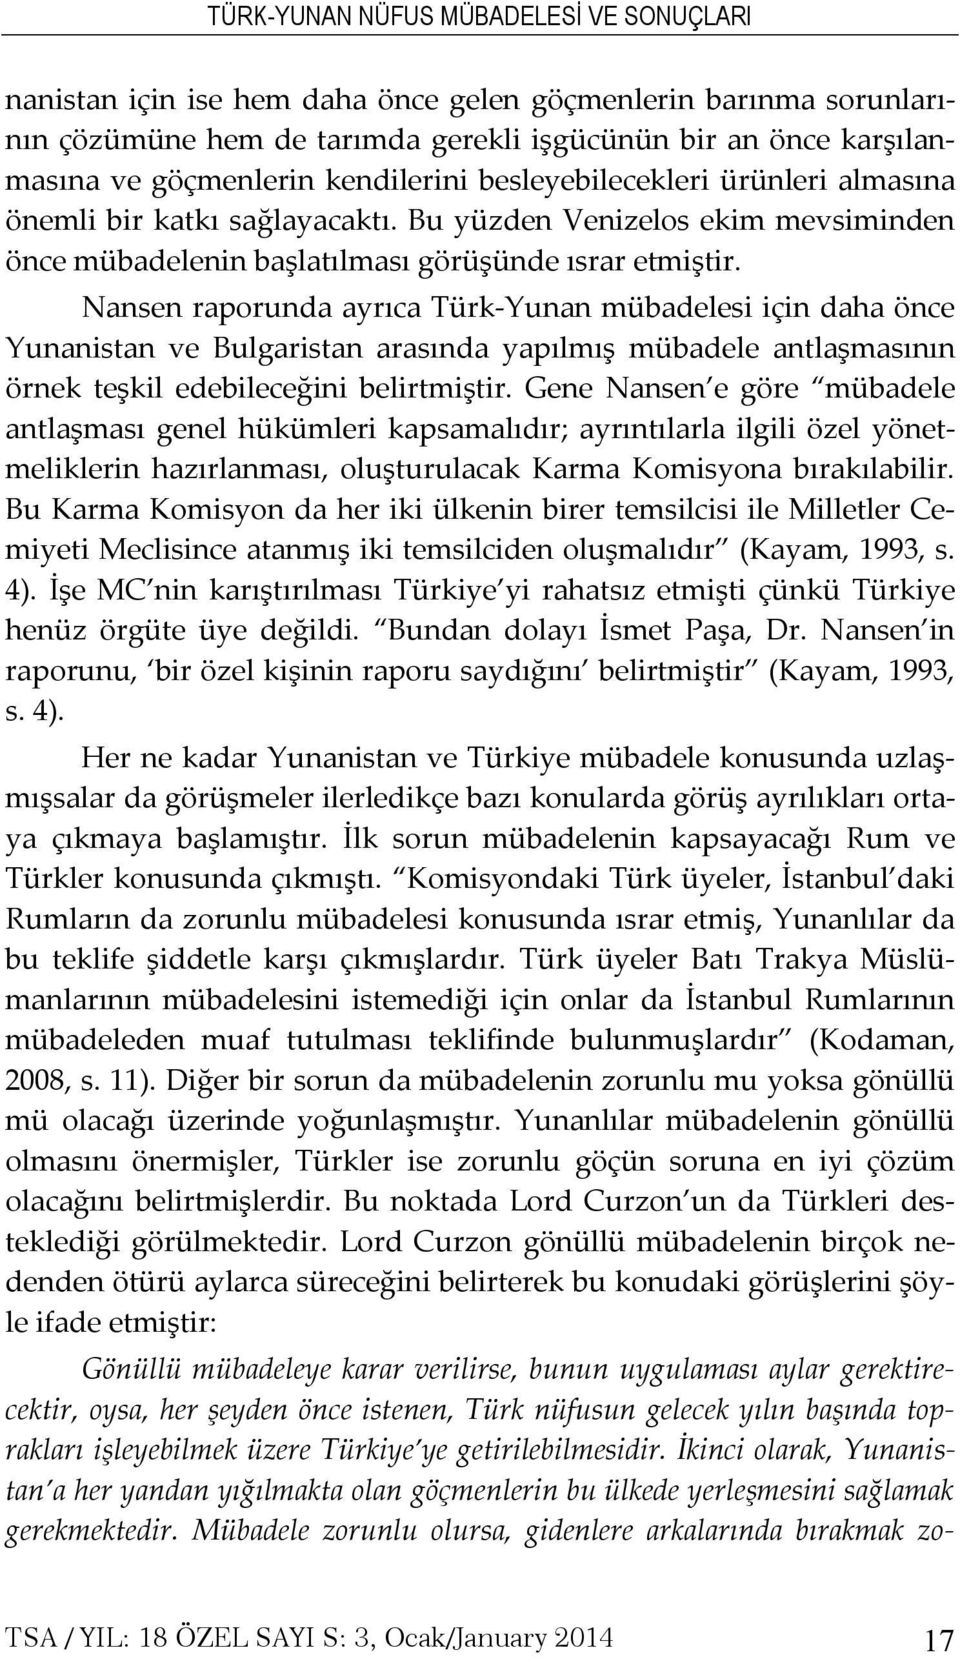 Nansen raporunda ayrıca Türk-Yunan mübadelesi için daha önce Yunanistan ve Bulgaristan arasında yapılmış mübadele antlaşmasının örnek teşkil edebileceğini belirtmiştir.